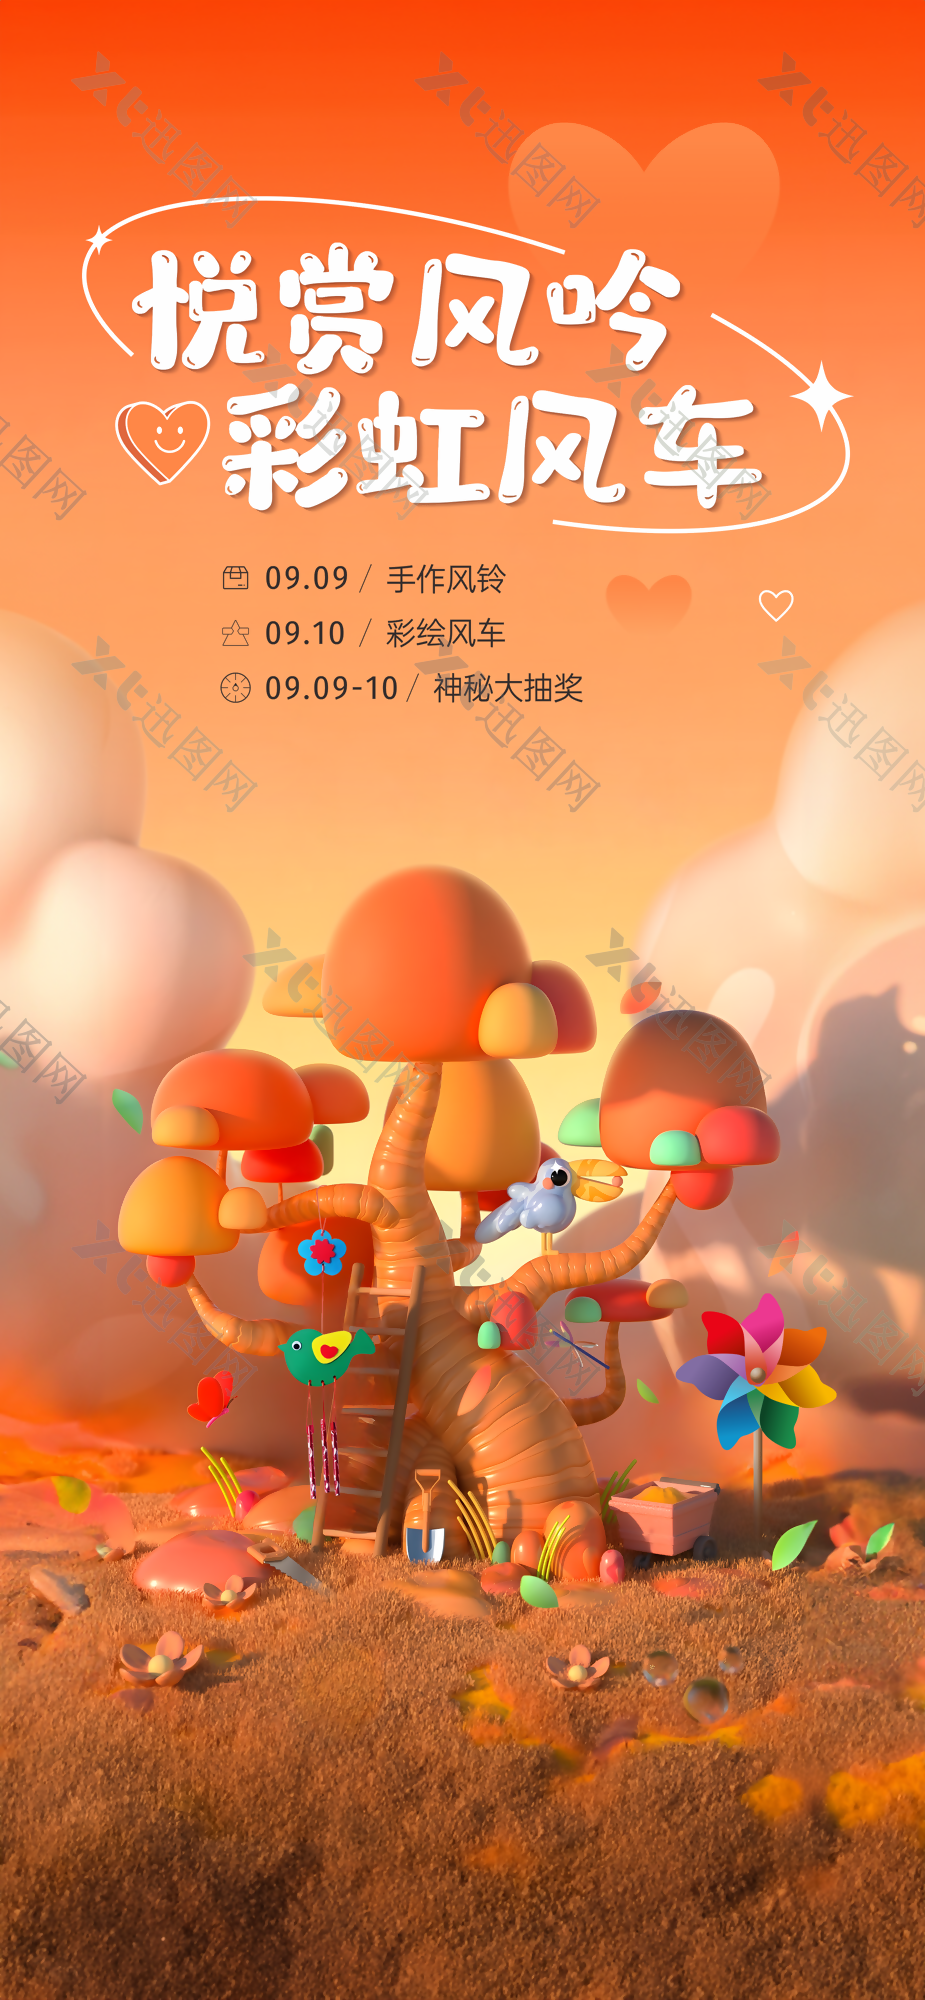 橙色系悦赏风吟彩虹风车DIY活动海报